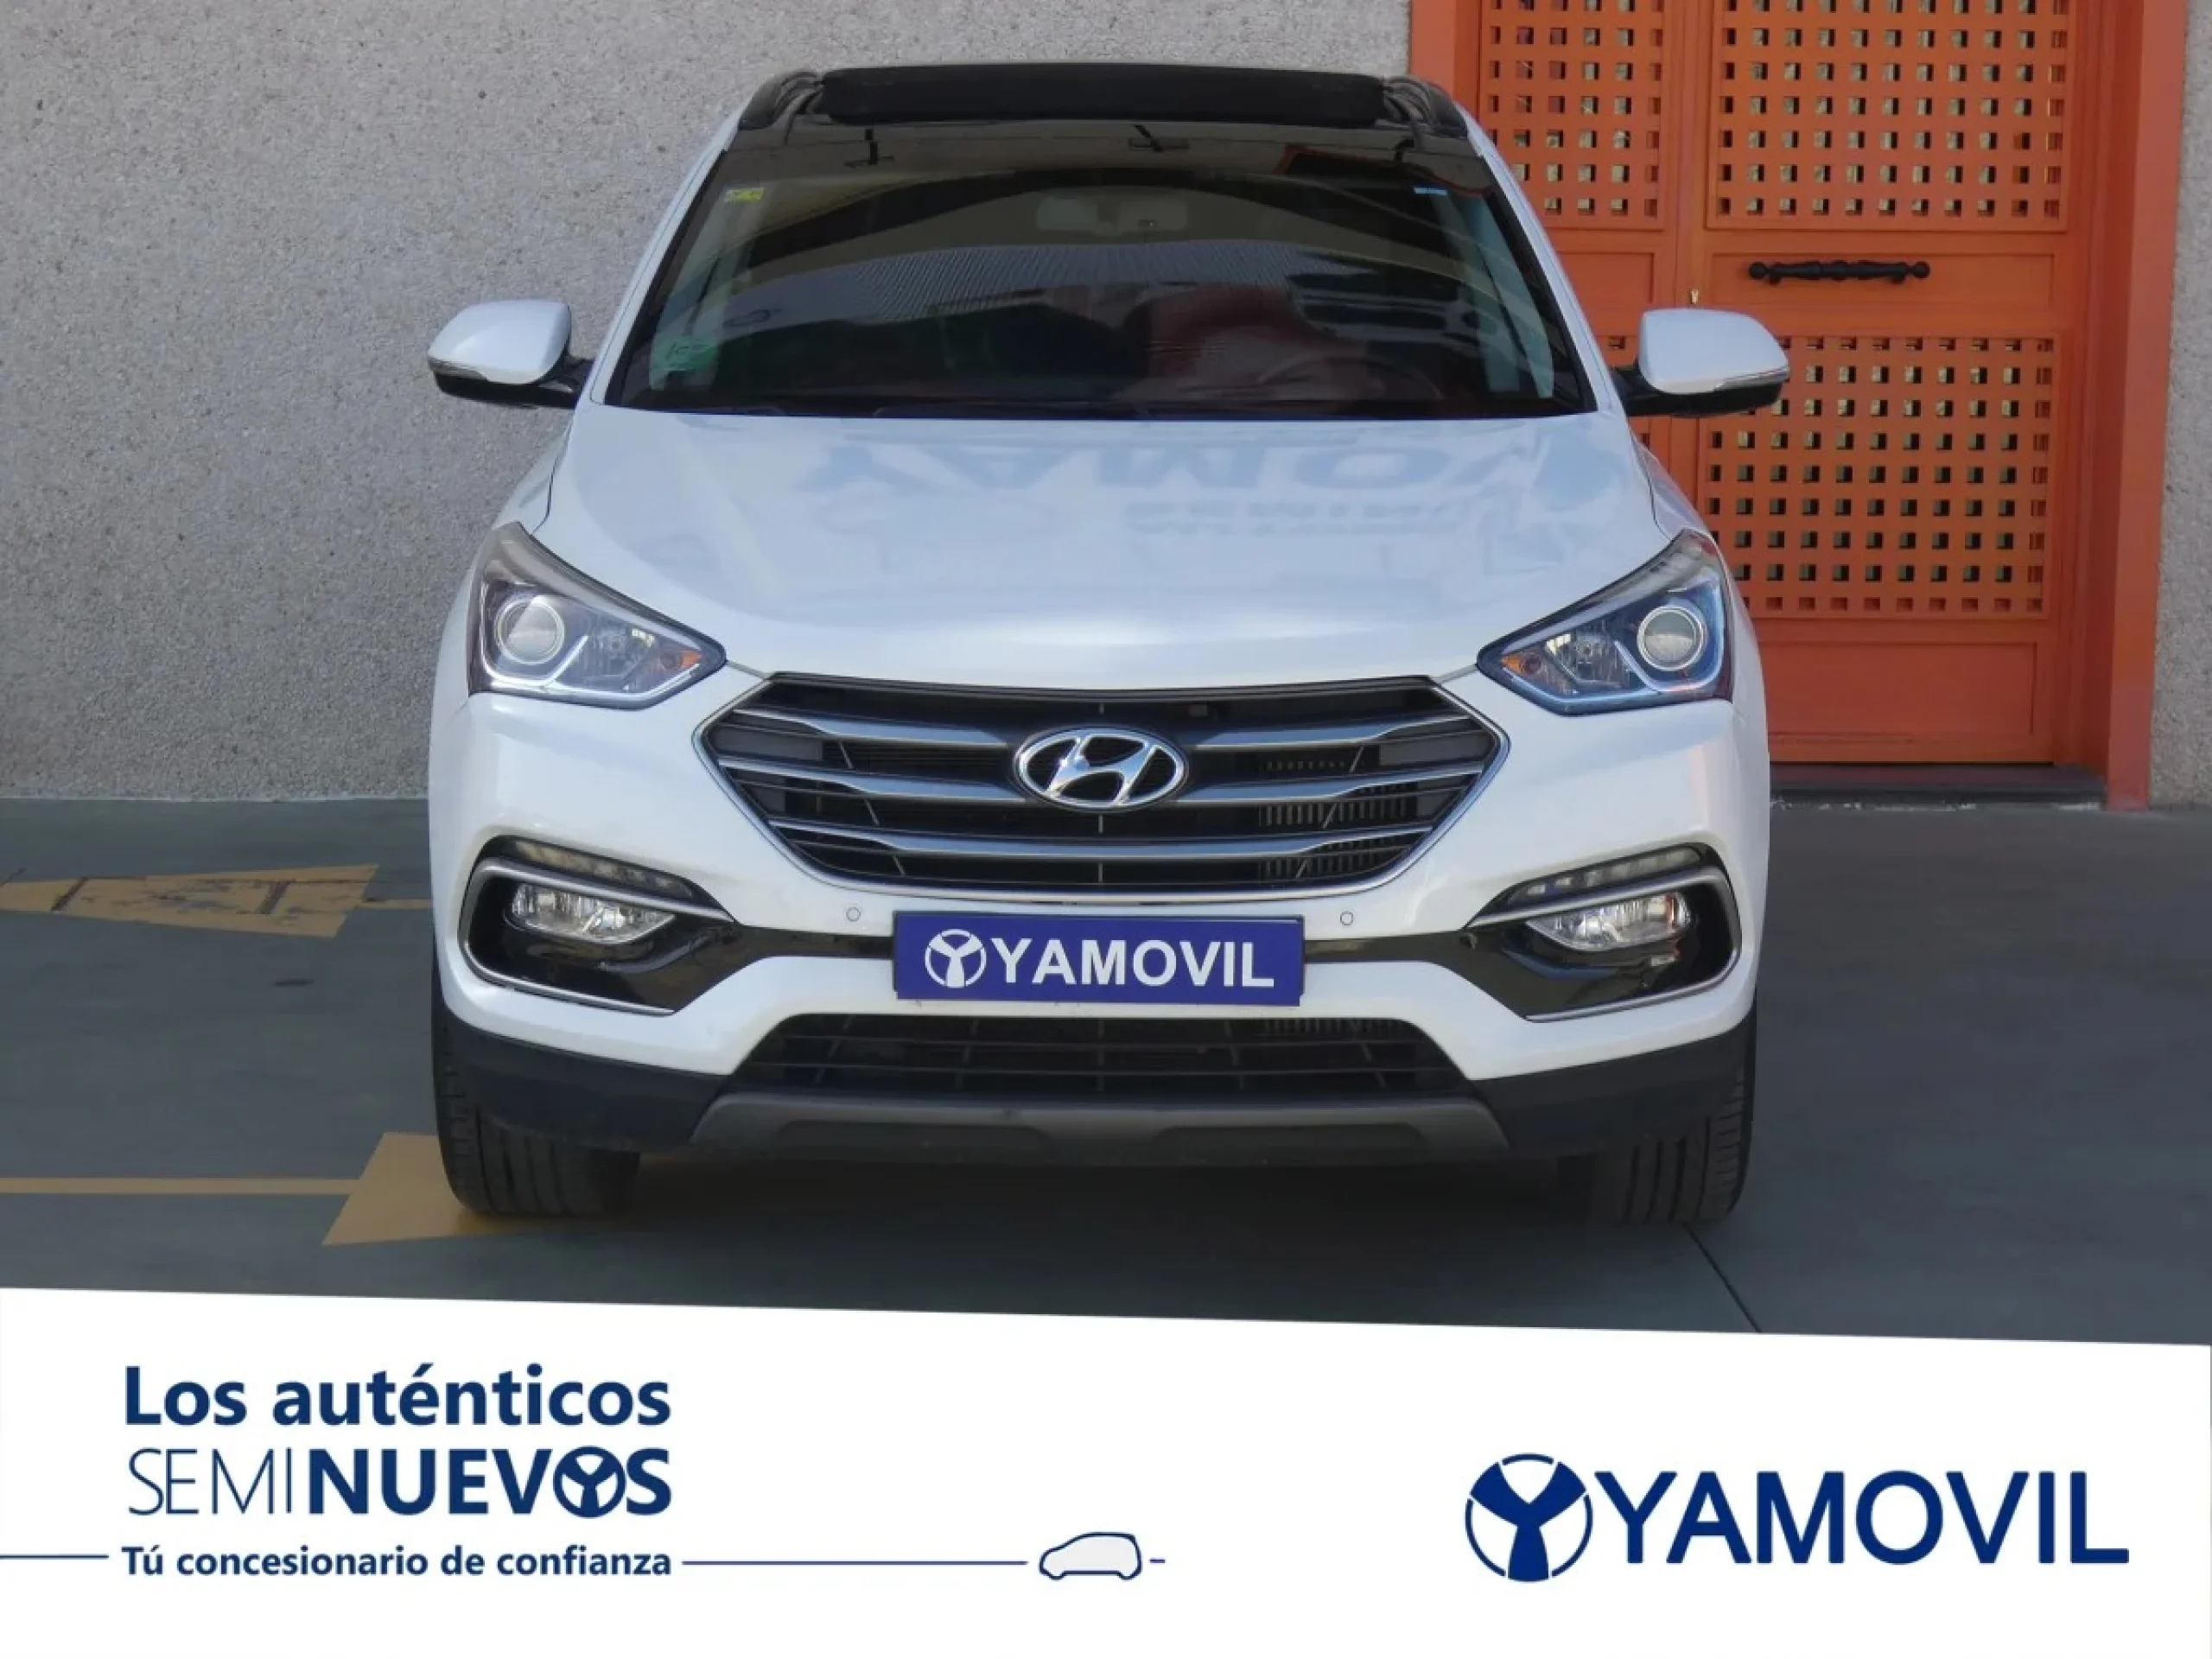 Hyundai Santa Fe 2.2 CRDI 25 Aniversario 4x2 7S 147 kW (200 CV) - Foto 2